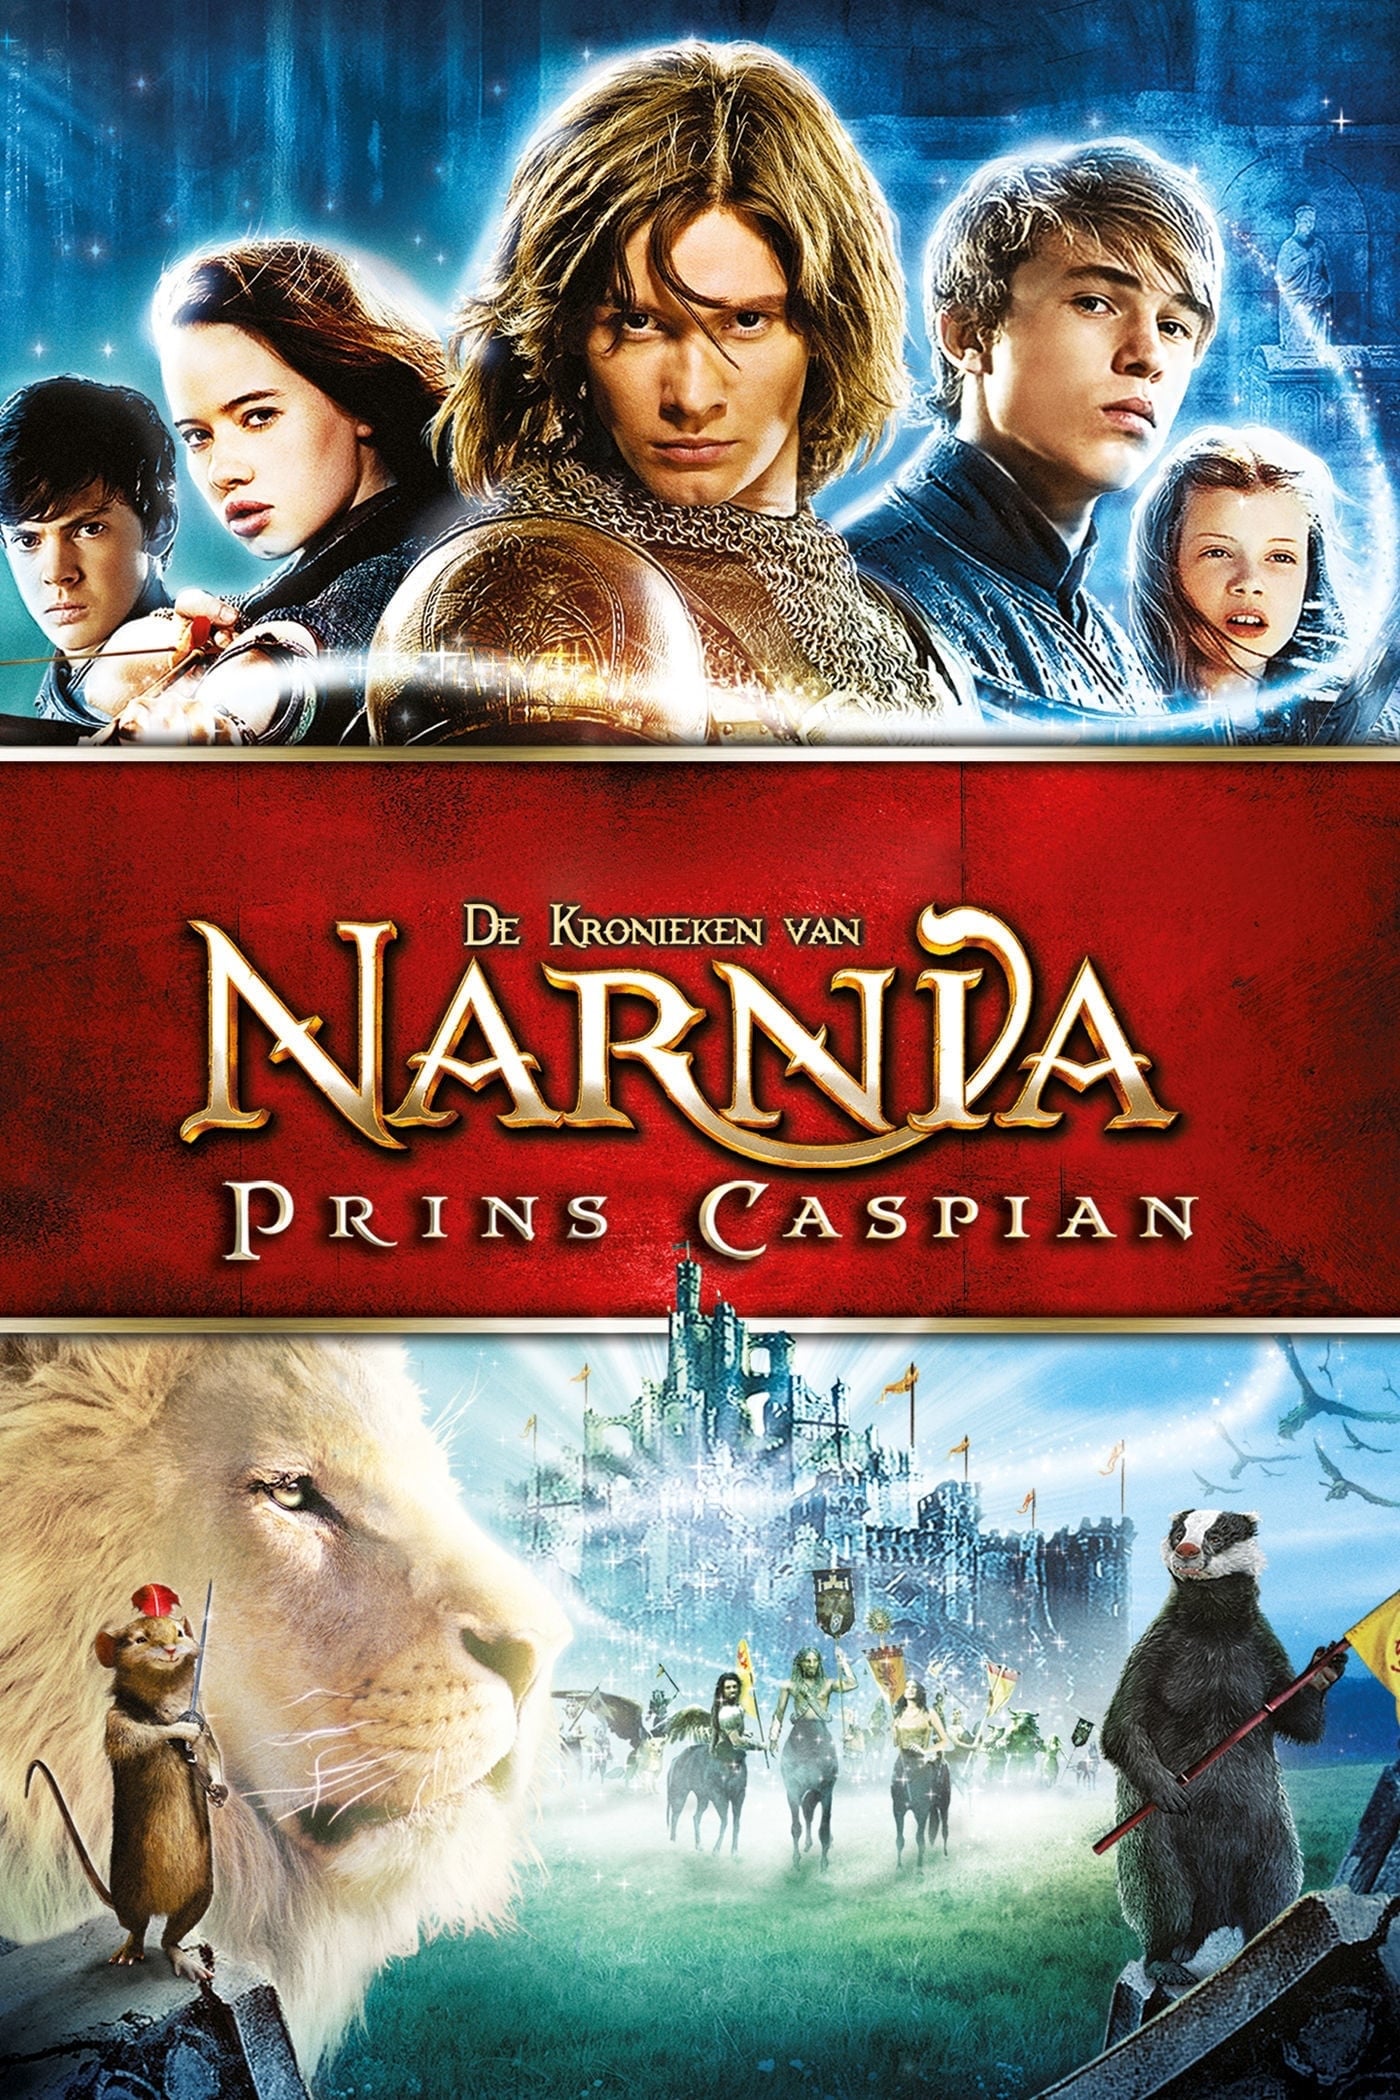 Film Cronicile Din Narnia 1 Online Subtitrat Postere, poze, imagini, walpapere desktop pentru Film Cronicile din